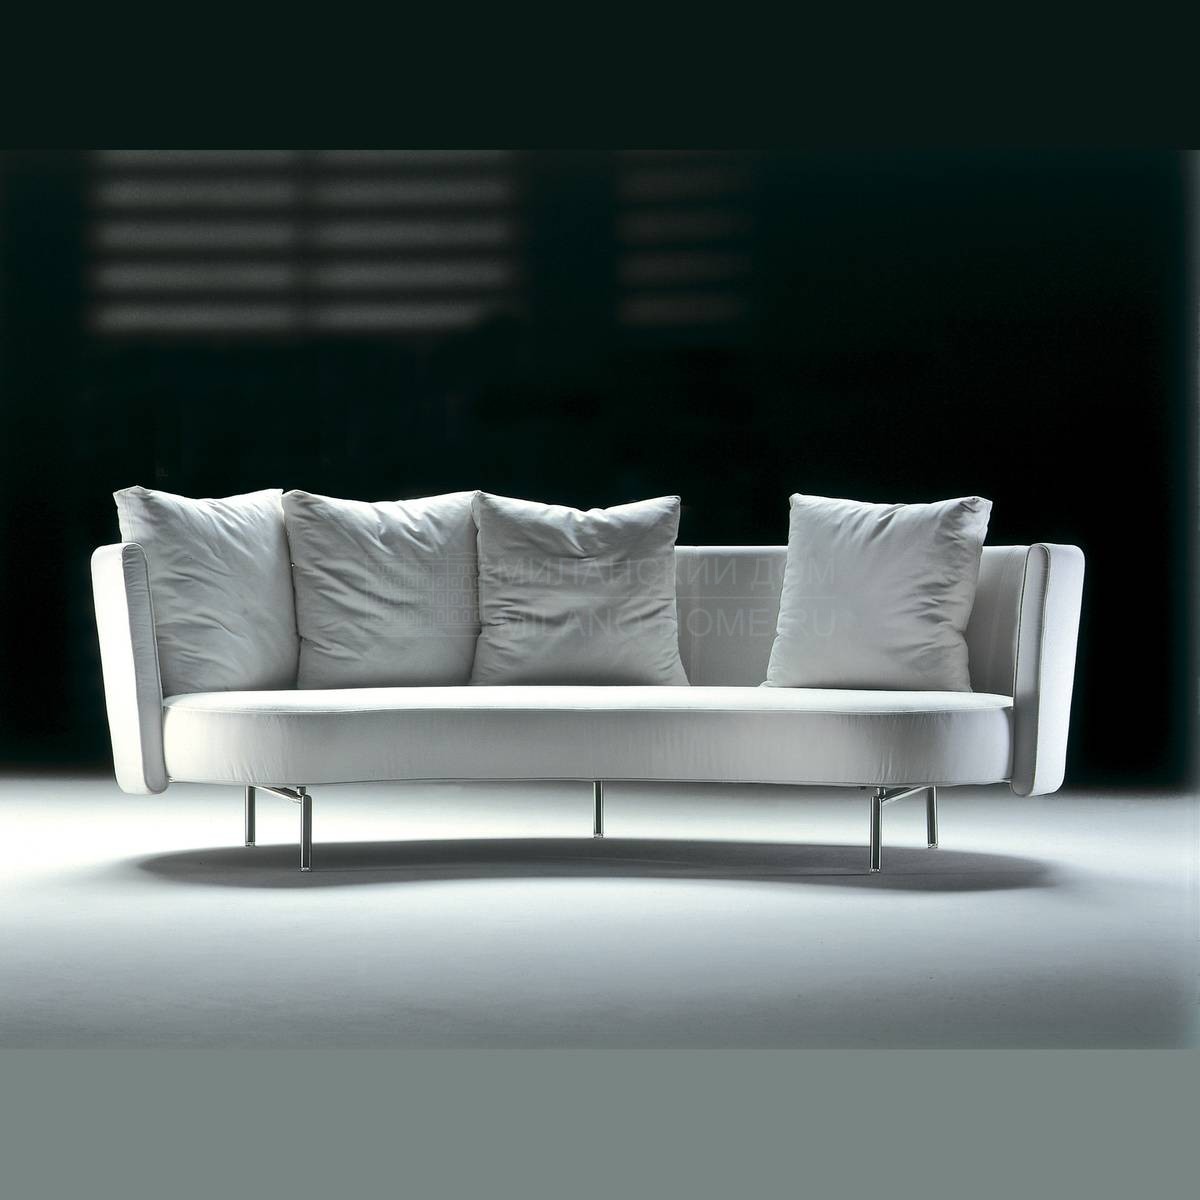 Прямой диван Phil /sofa из Италии фабрики FLEXFORM